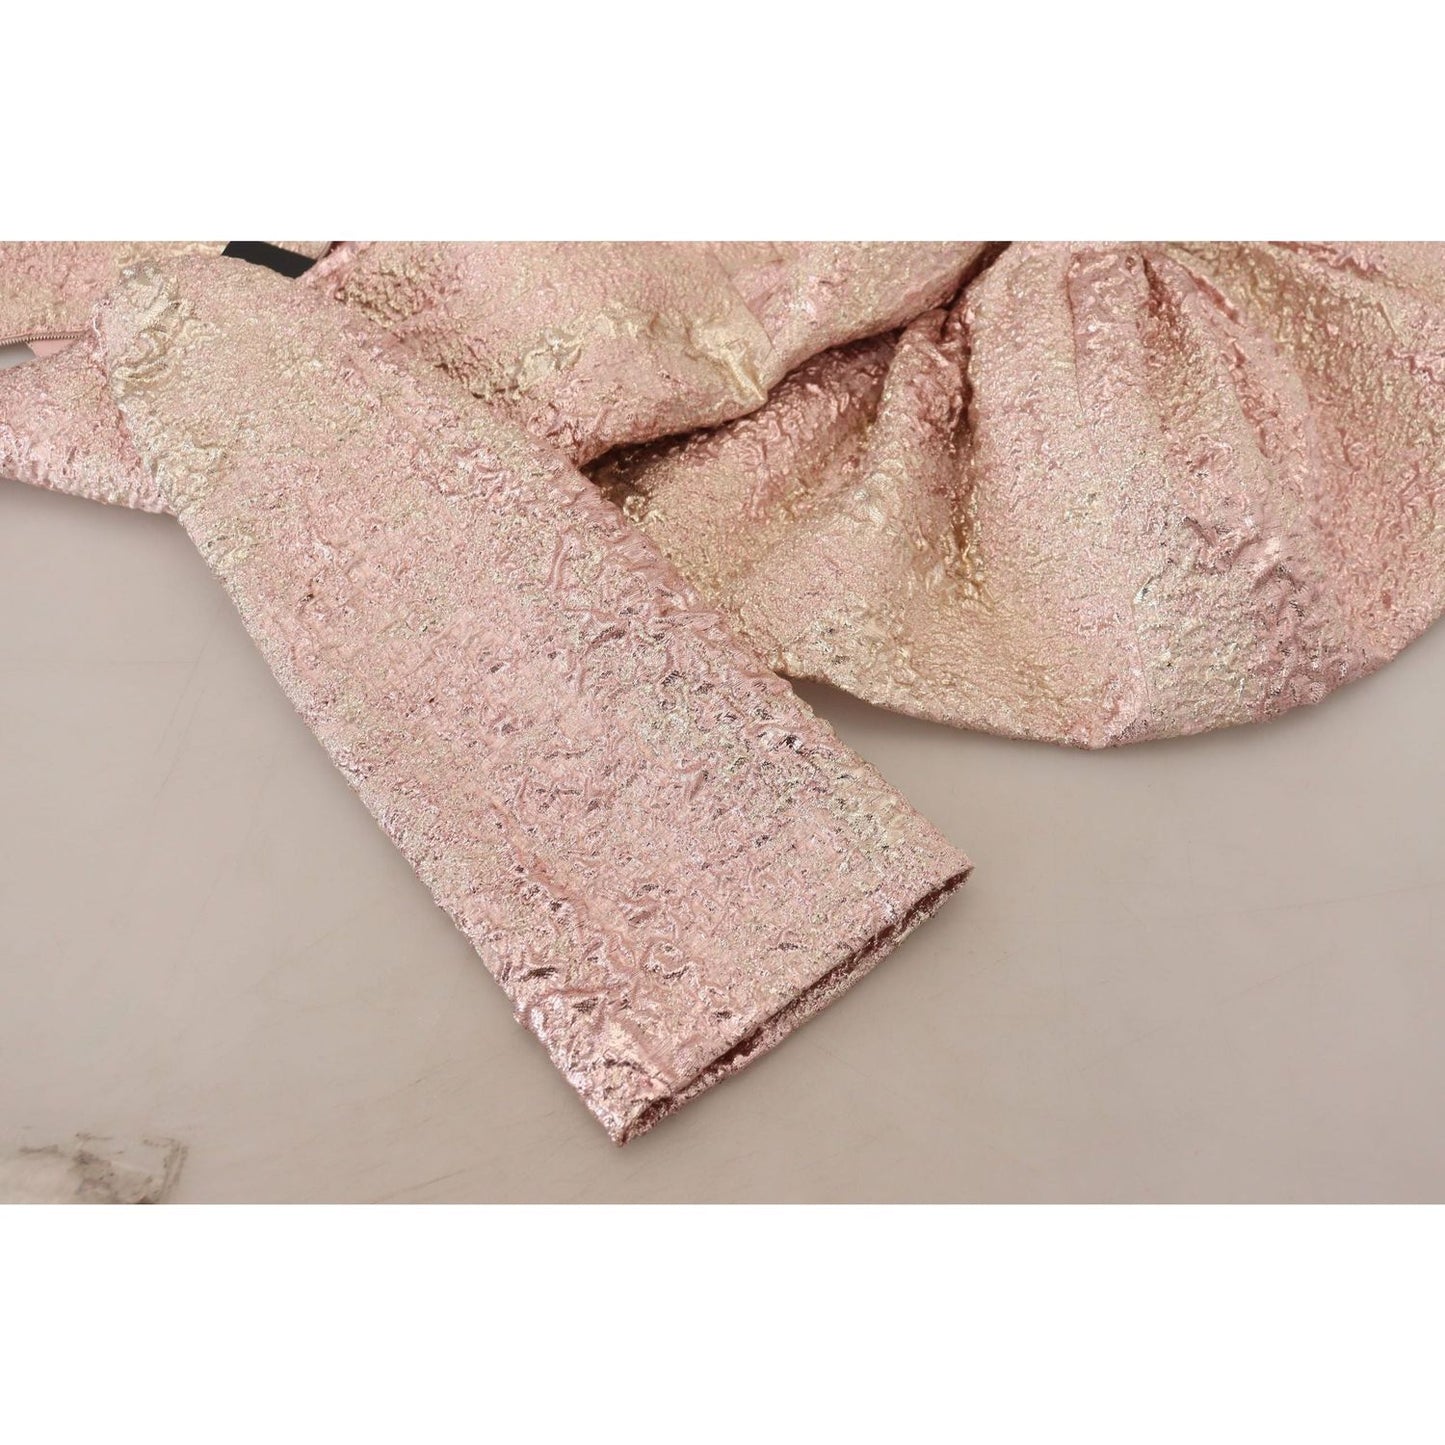 Dolce & Gabbana Elegant Pink Jacquard Midi Sheath Dress WOMAN DRESSES pink-jaquard-3-4-sleeve-sheath-midi-dress